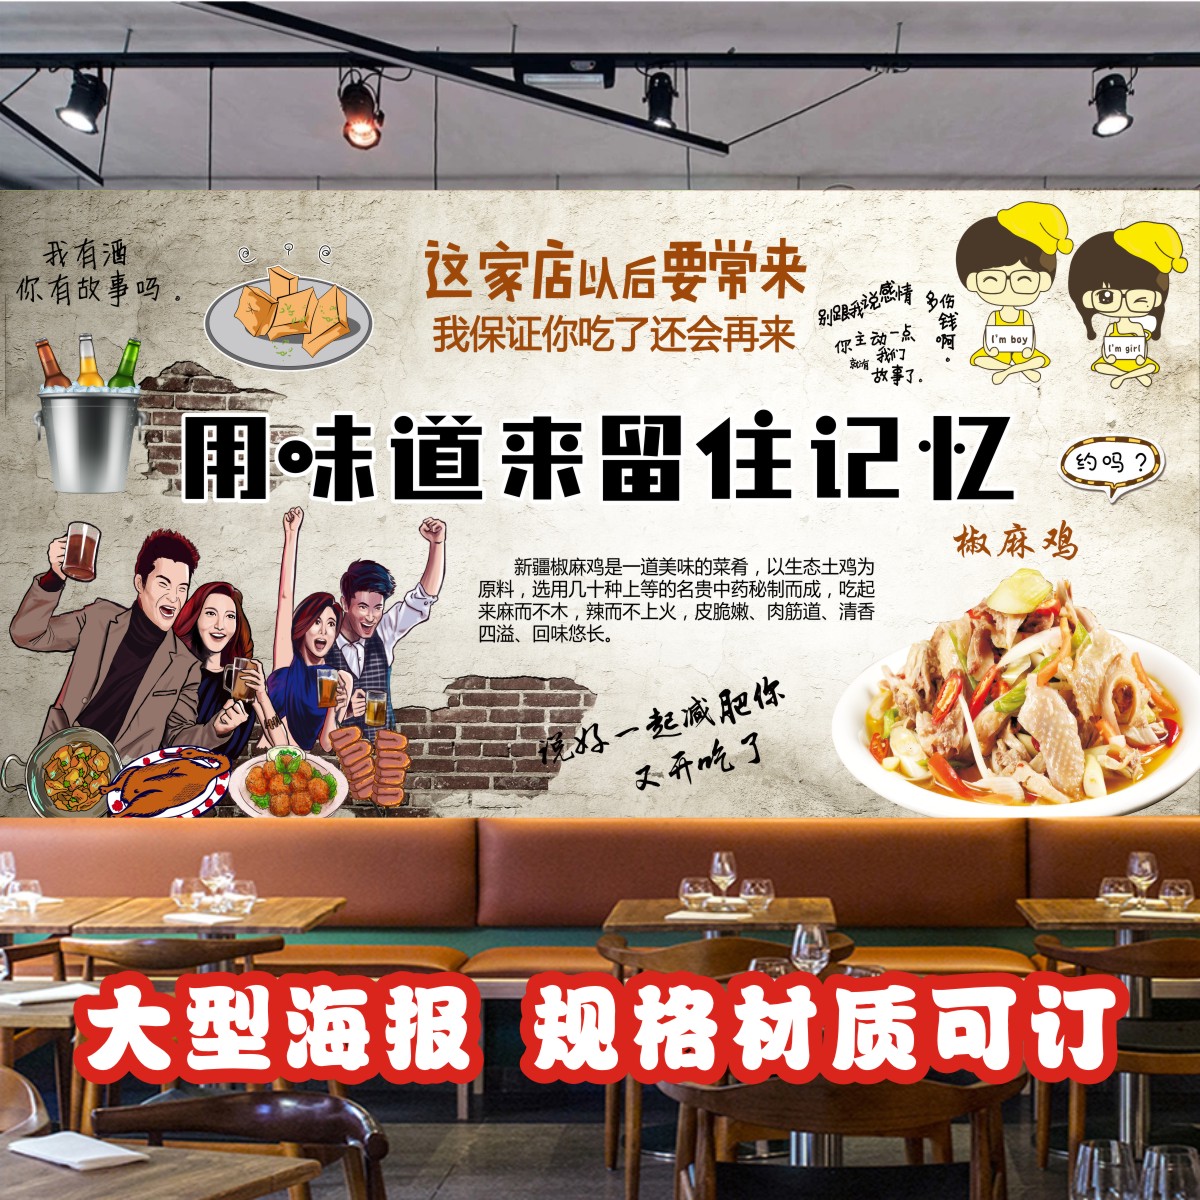 新疆椒麻鸡海报宣传画小吃店广告自粘贴纸墙贴写真背景装饰画2136